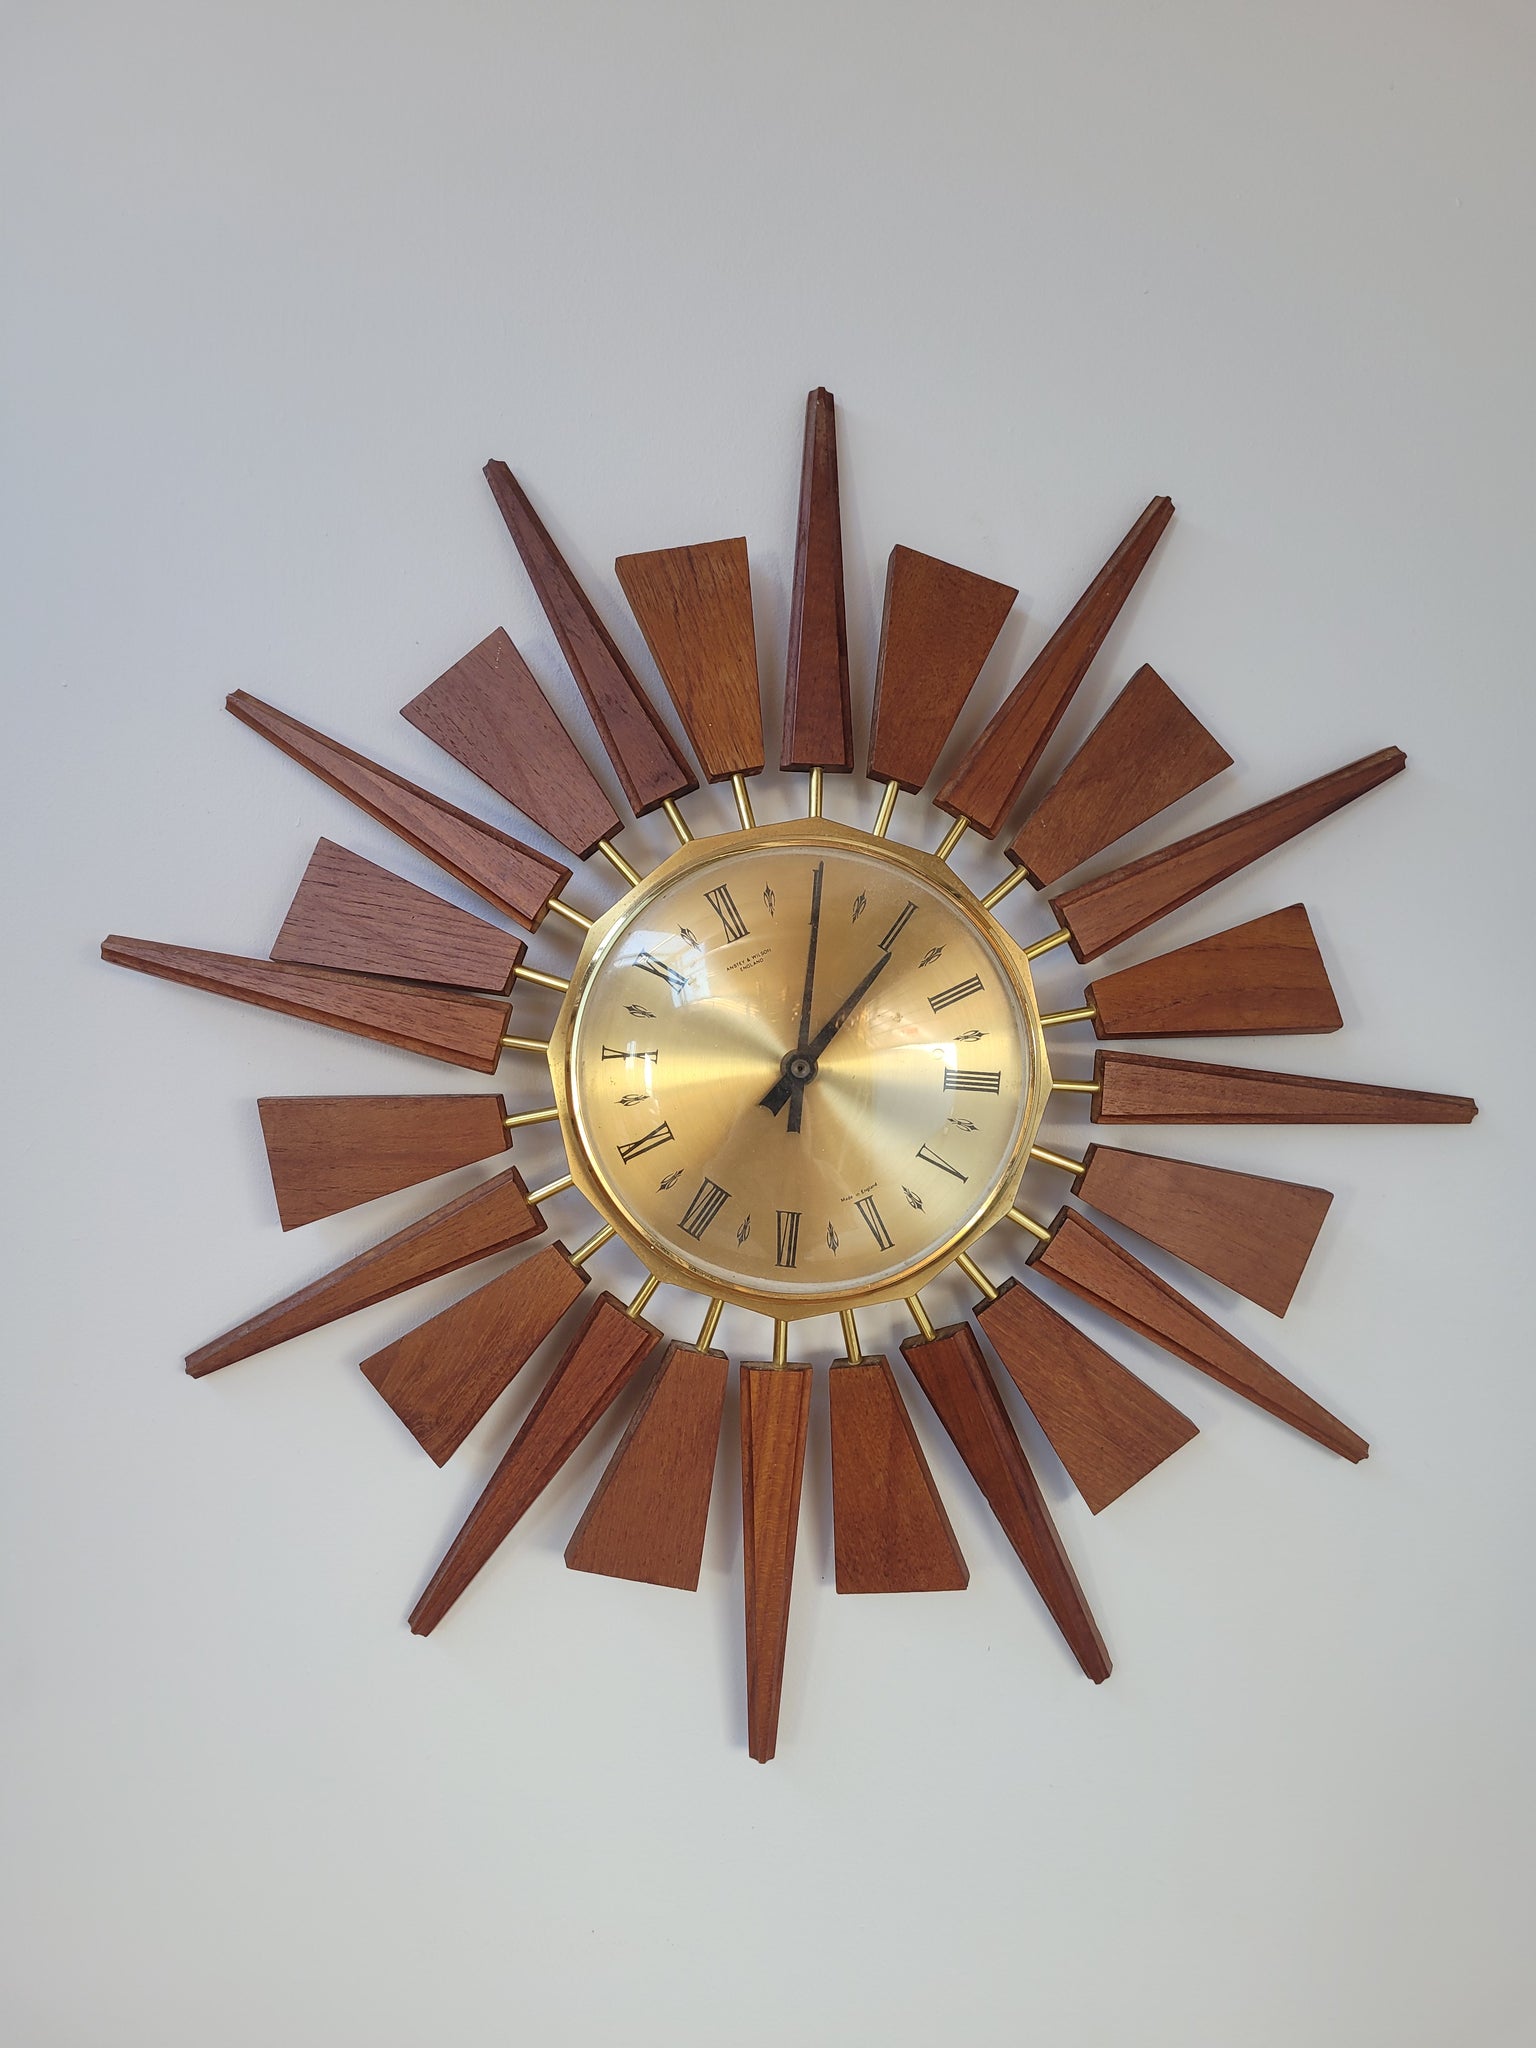 Anstey & Wilson Clock